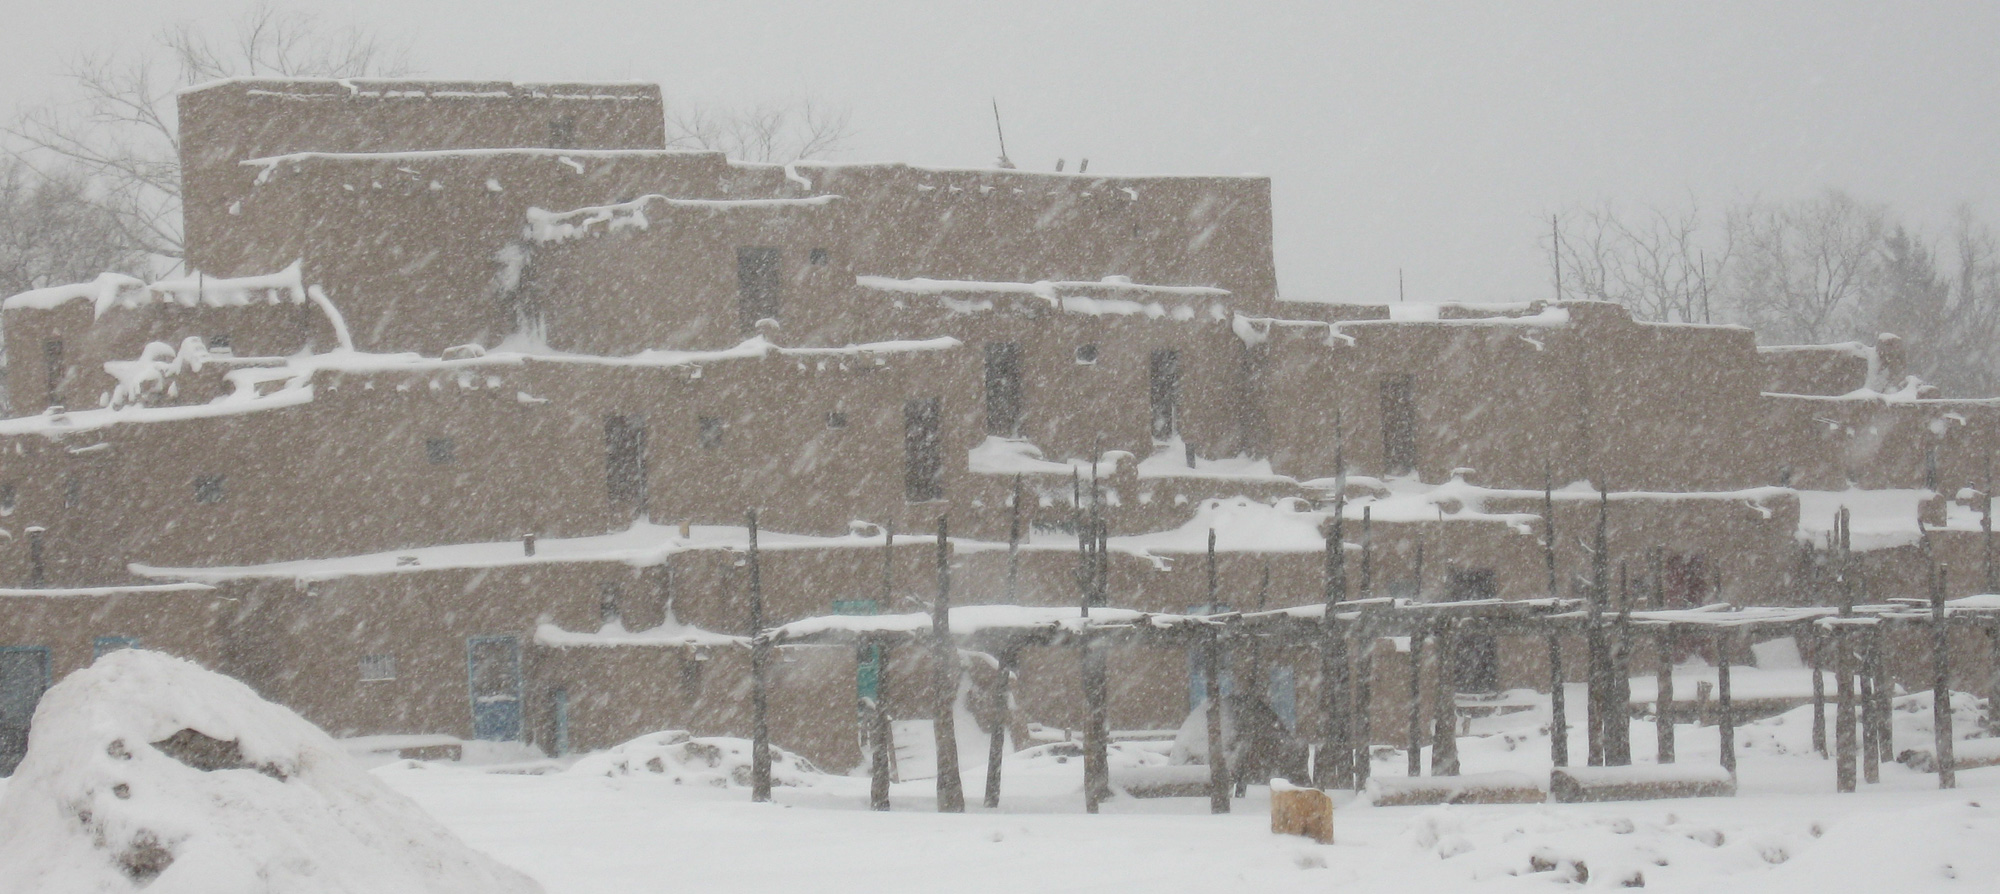 Taos Pueblo in Snow